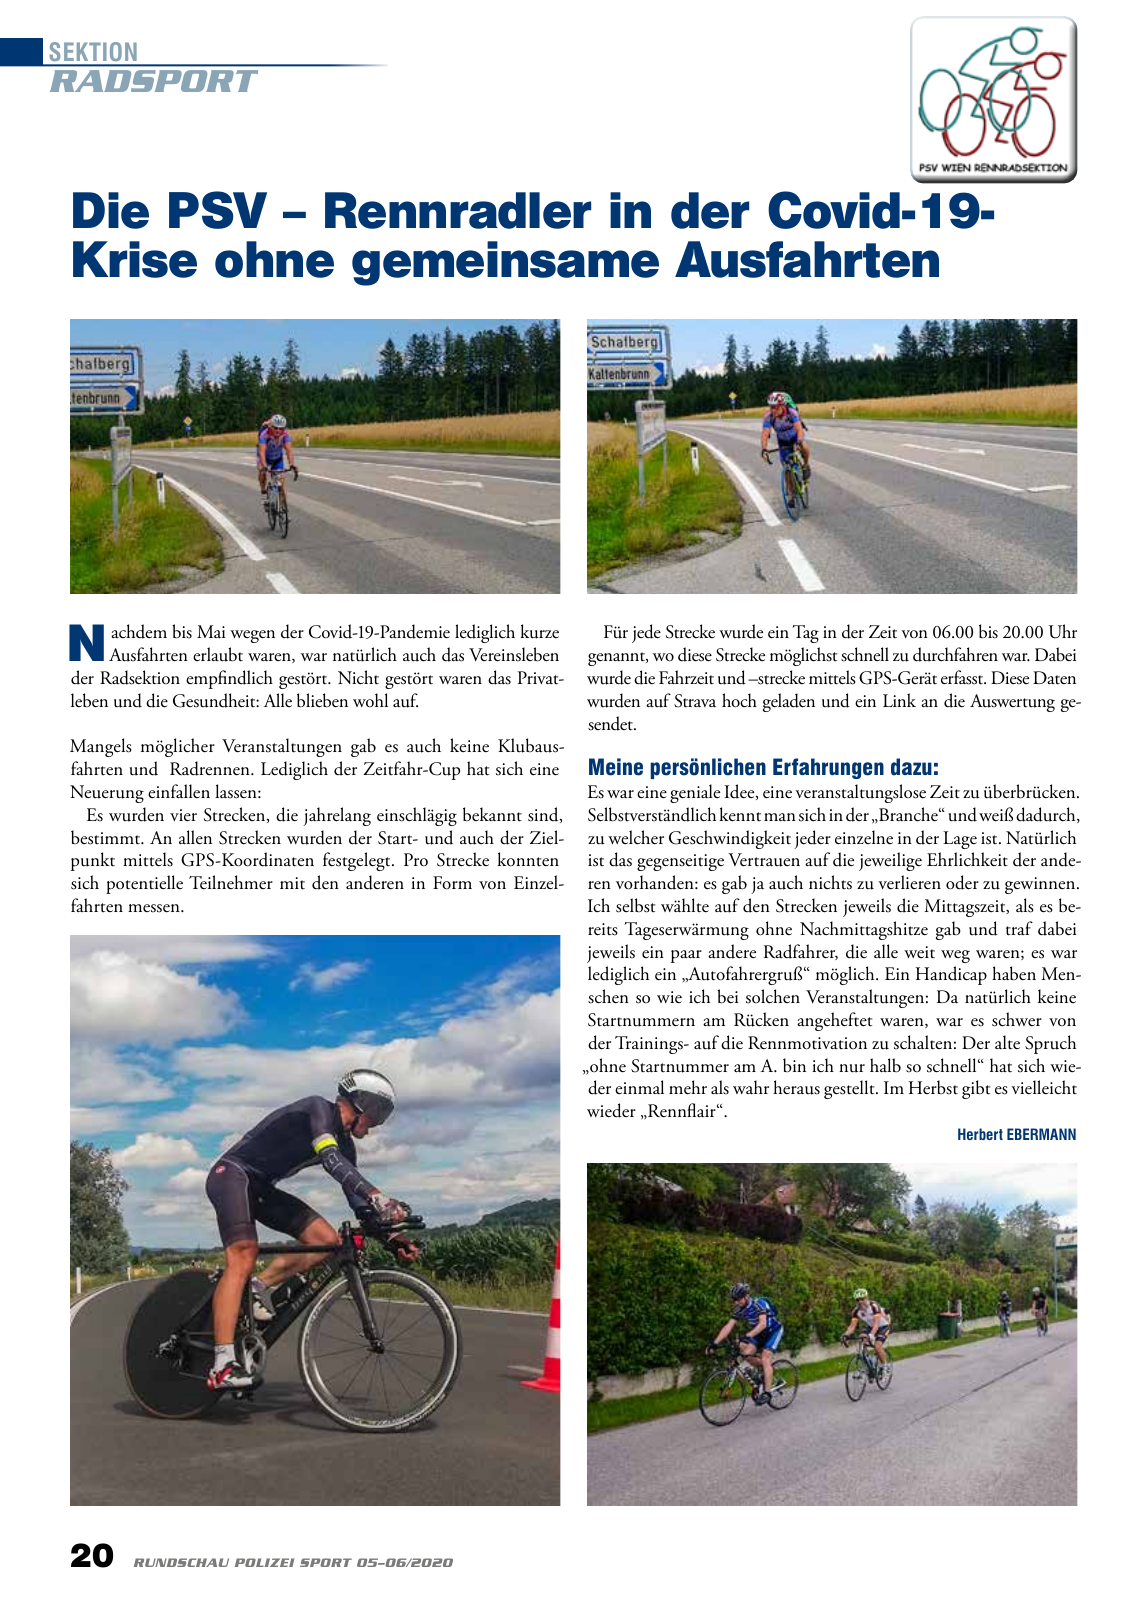 Vorschau Rundschau Polizei Sport 05-06/2020 Seite 20